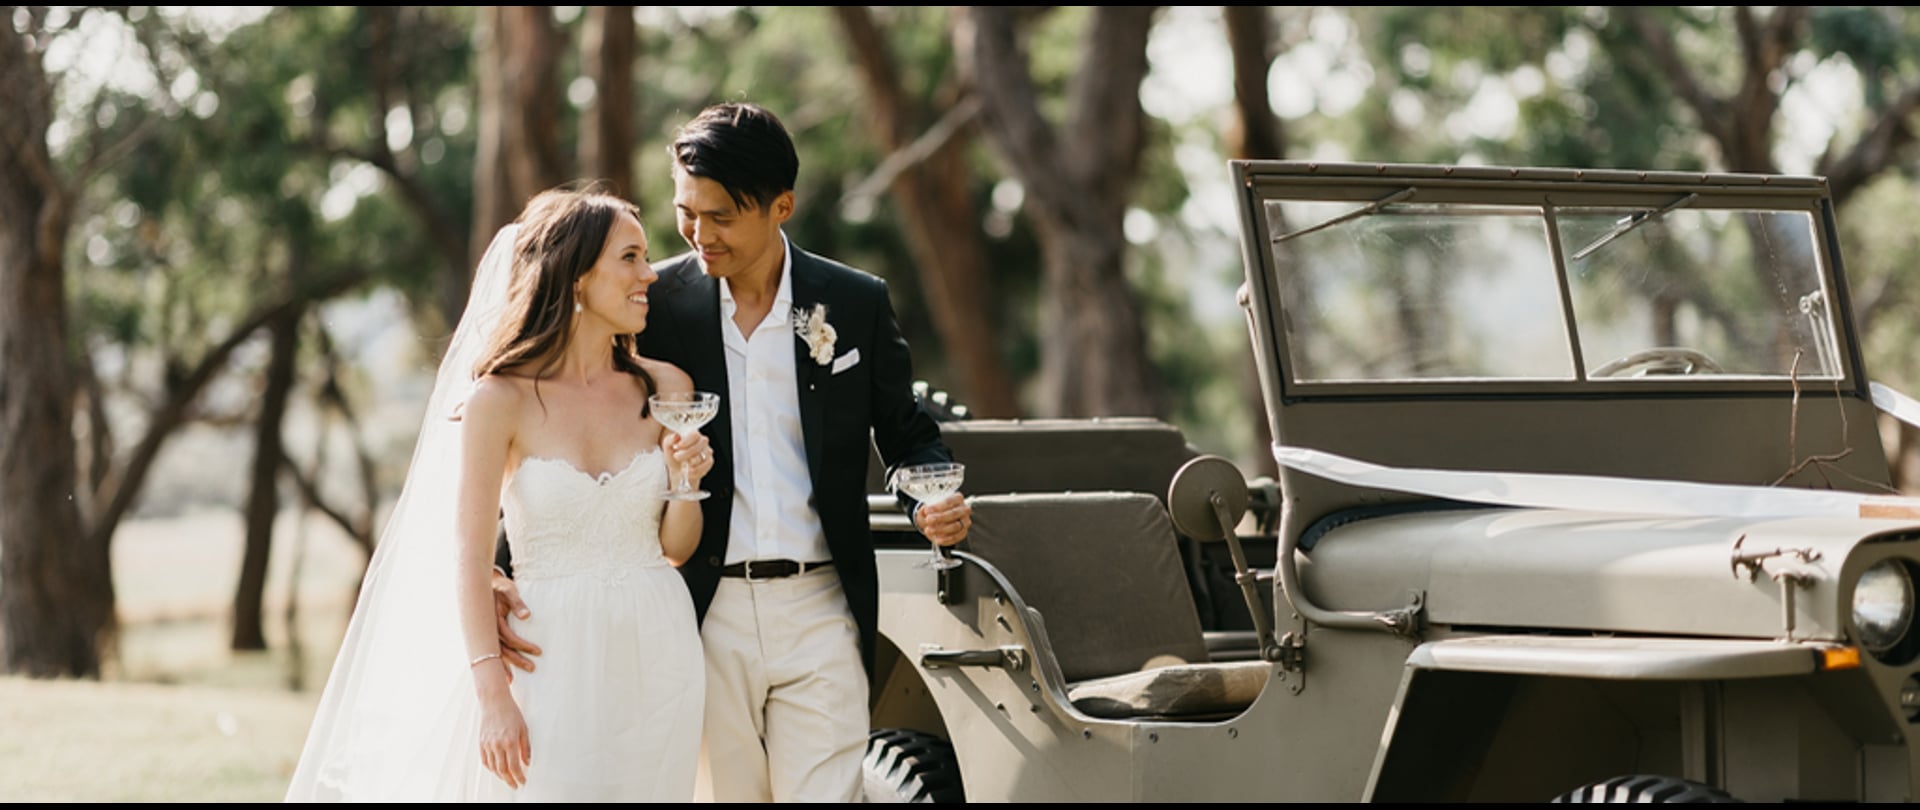 Emma & Charles Wedding Video Filmed at Mornington Peninsula, Victoria